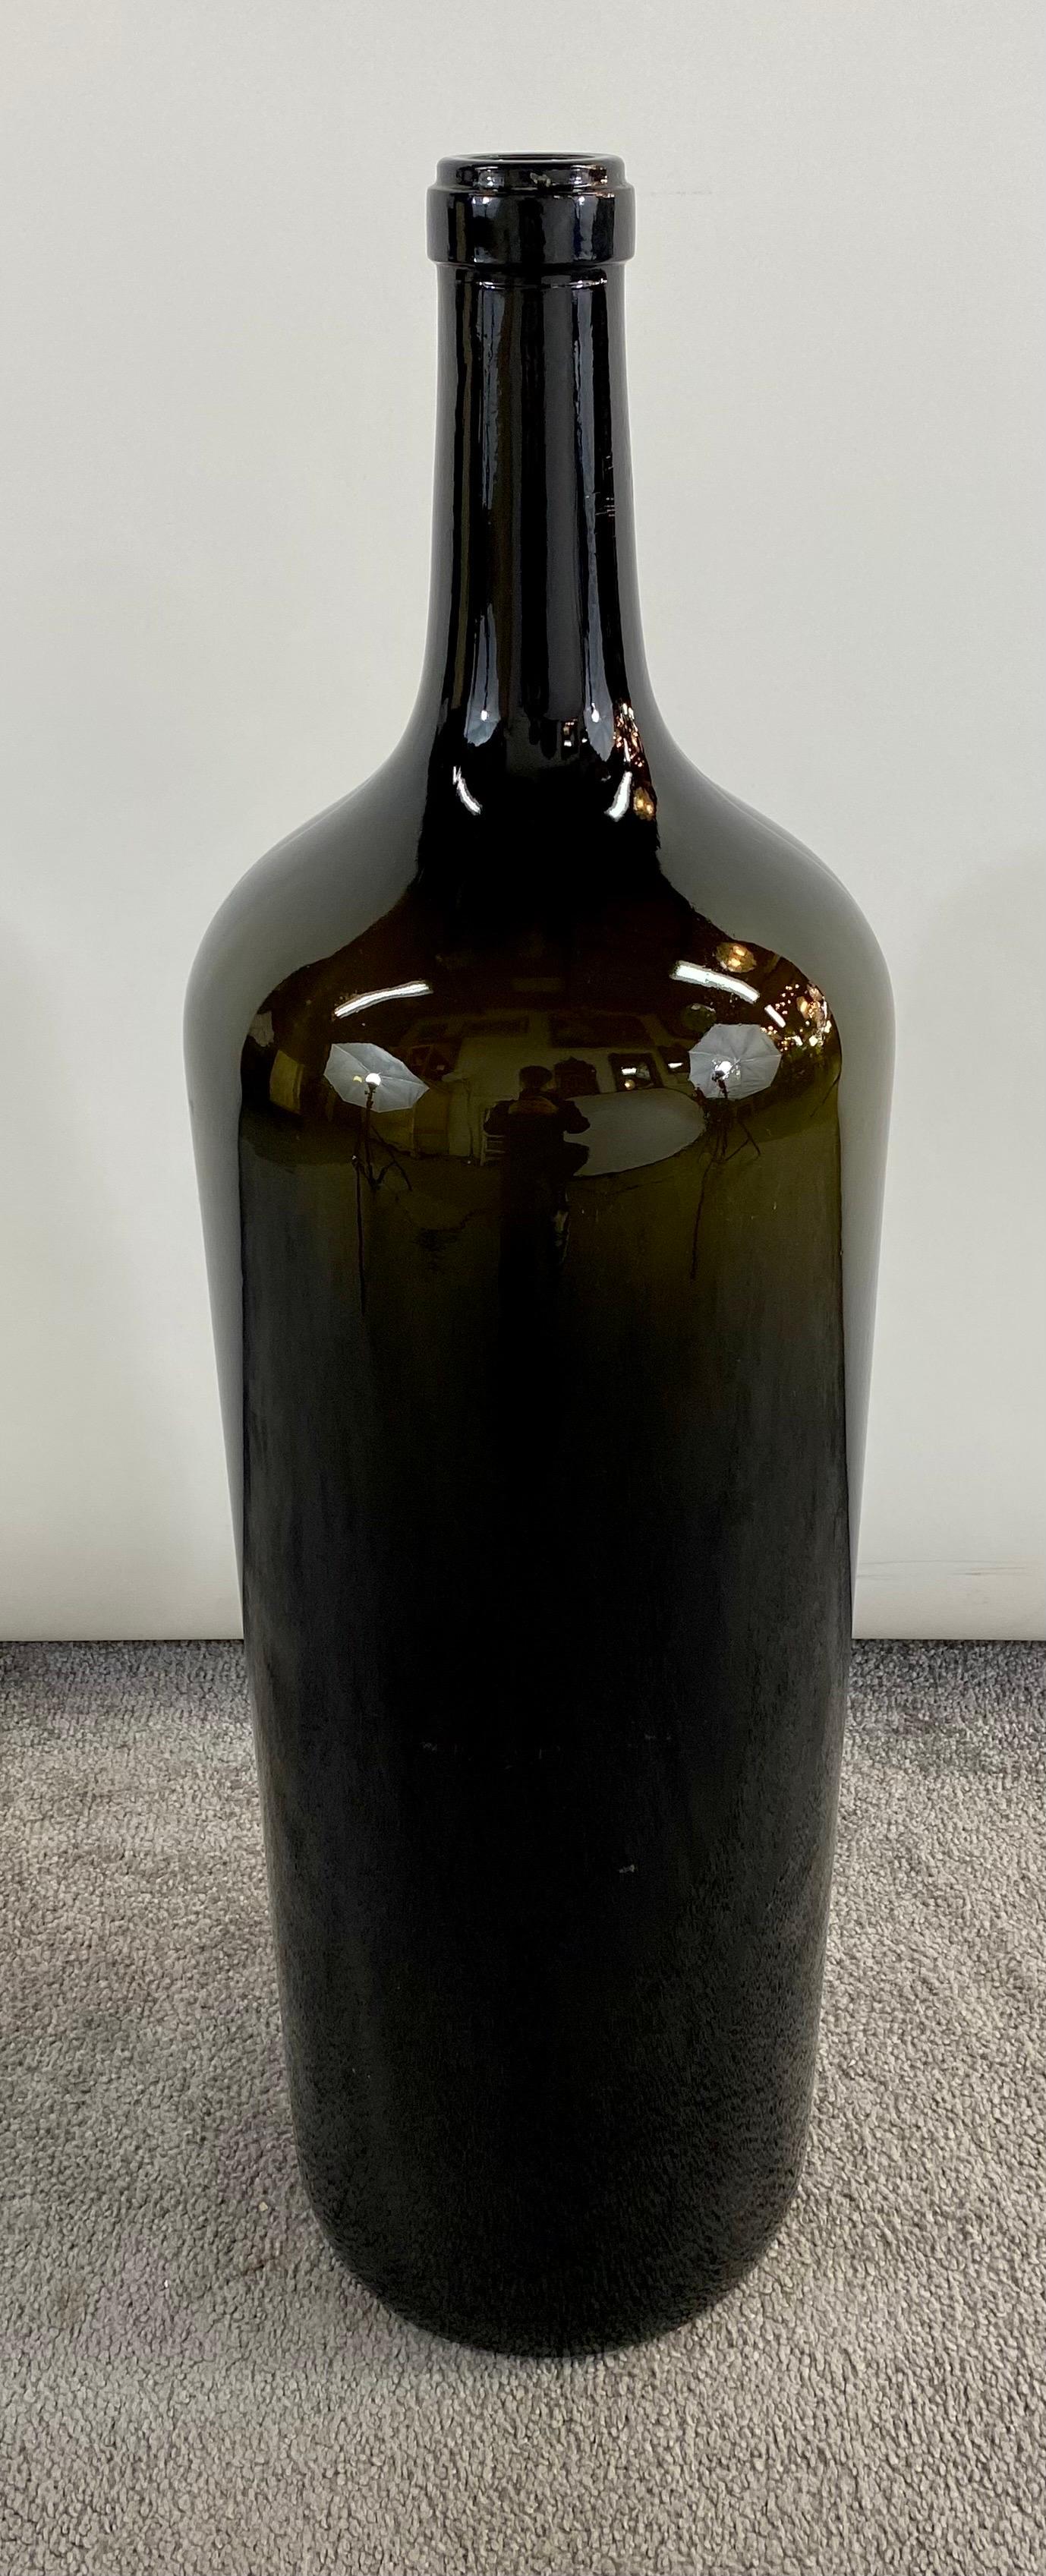 Une grande paire de bouteilles de vin en verre soufflé vert foncé de style Demijohn. Les bouteilles sont solides et très décoratives.  Embellissez votre chambre ou votre cave à vin avec cette paire de grandes bouteilles de vin ou utilisez-les comme